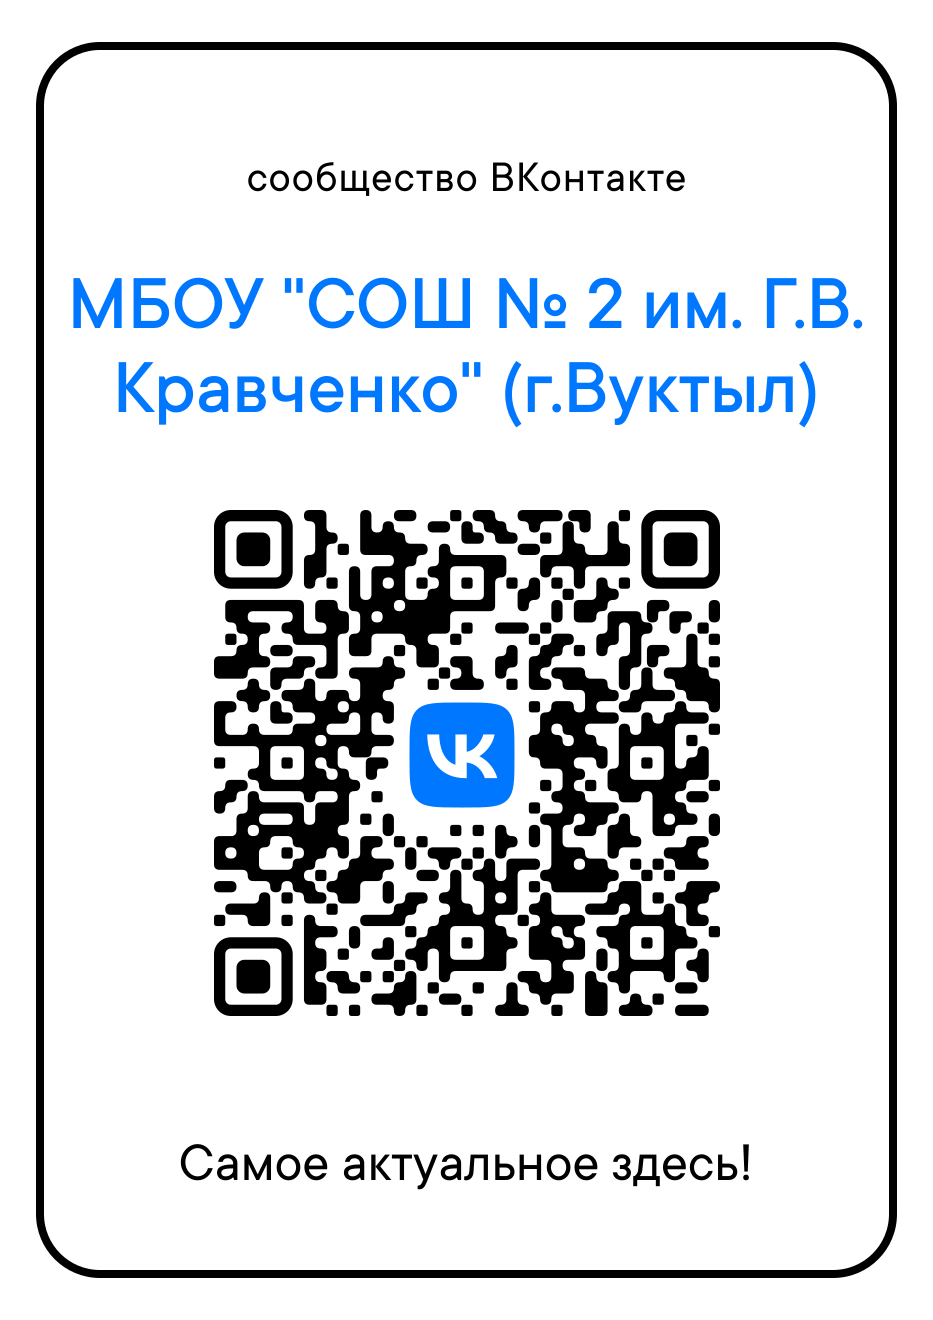 Переходите на наше сообщество Вконтакте.